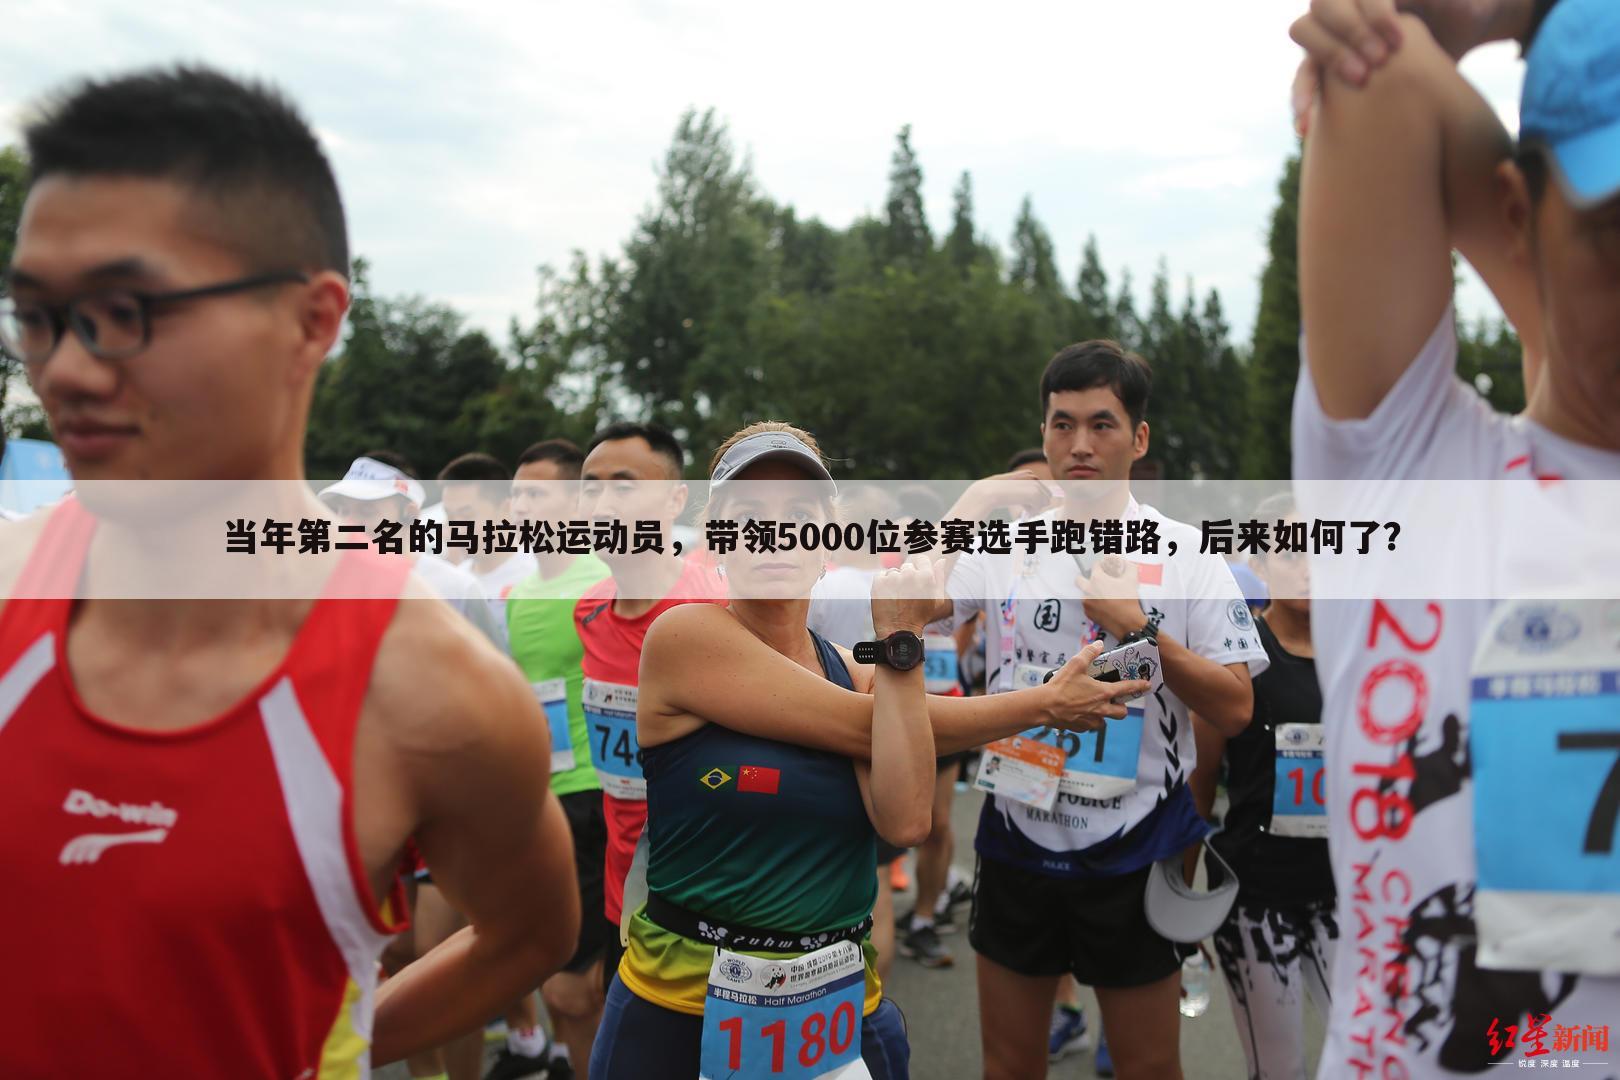 当年第二名的马拉松运动员，带领5000位参赛选手跑错路，后来如何了？